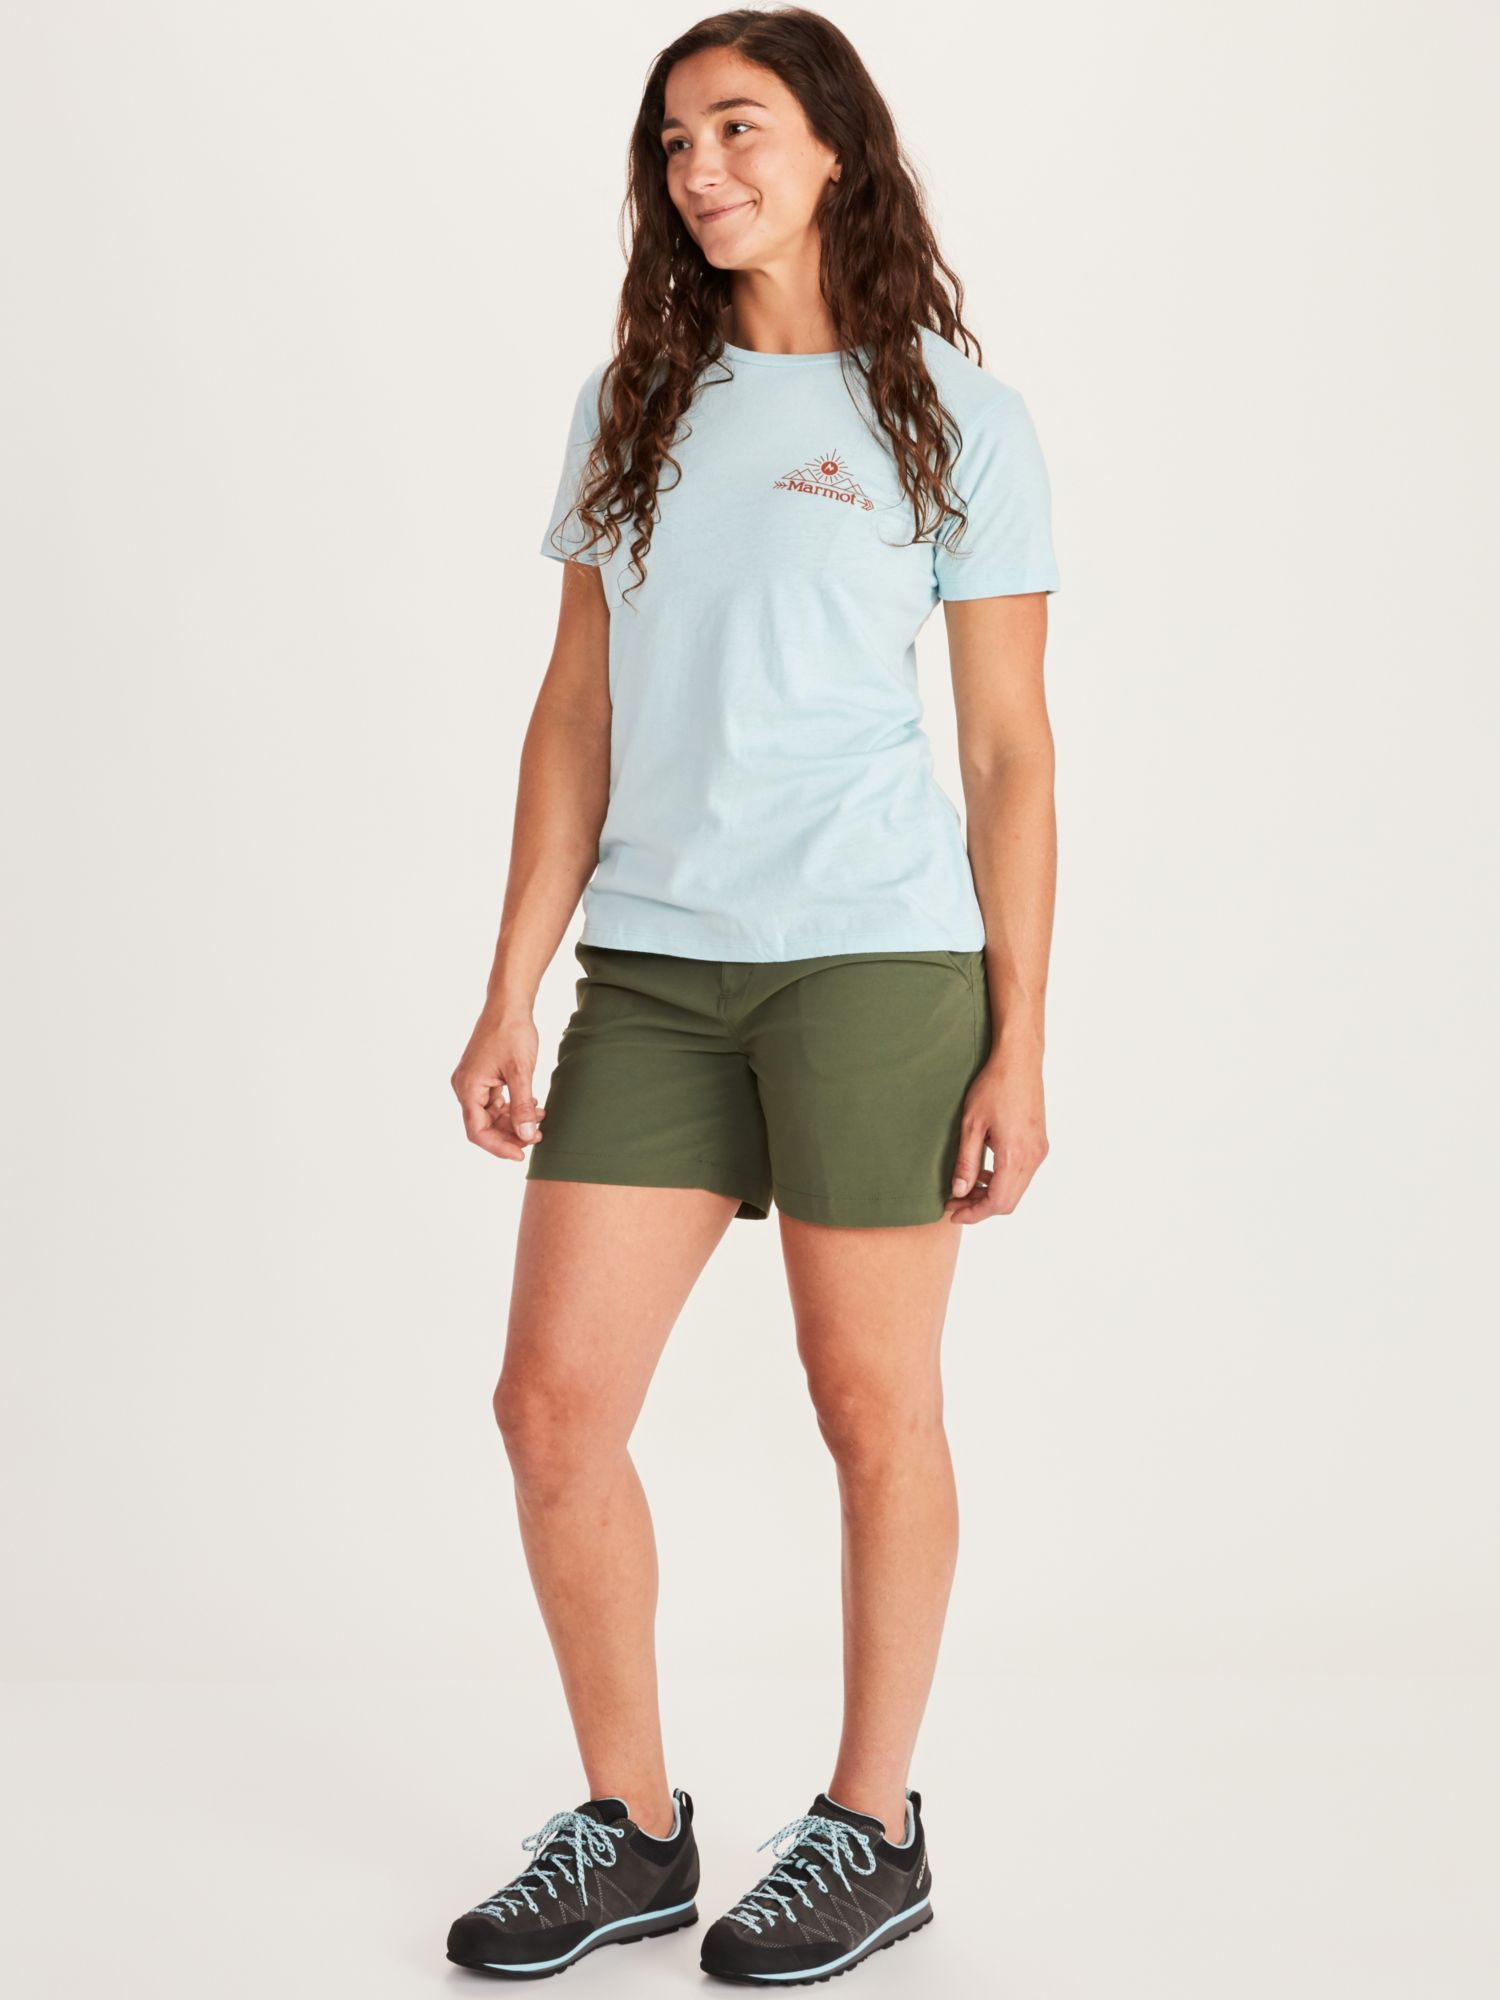 Women's Arrow Short-Sleeve T-Shirt